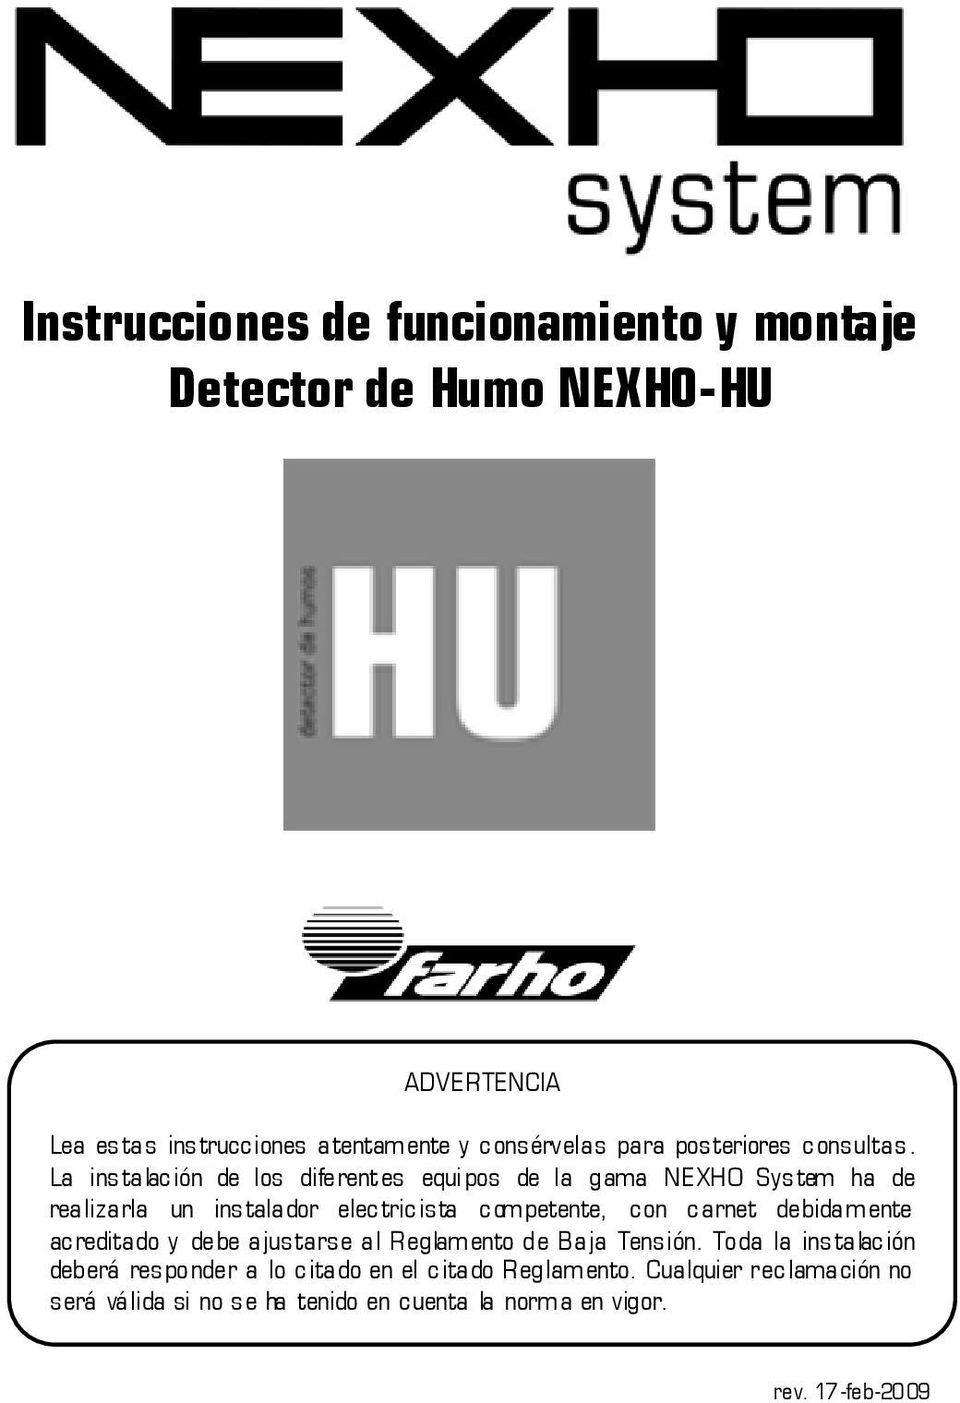 La instalación de los diferentes equipos de la gama NEXHO System ha de realizarla un instalador electricista competente, con carnet